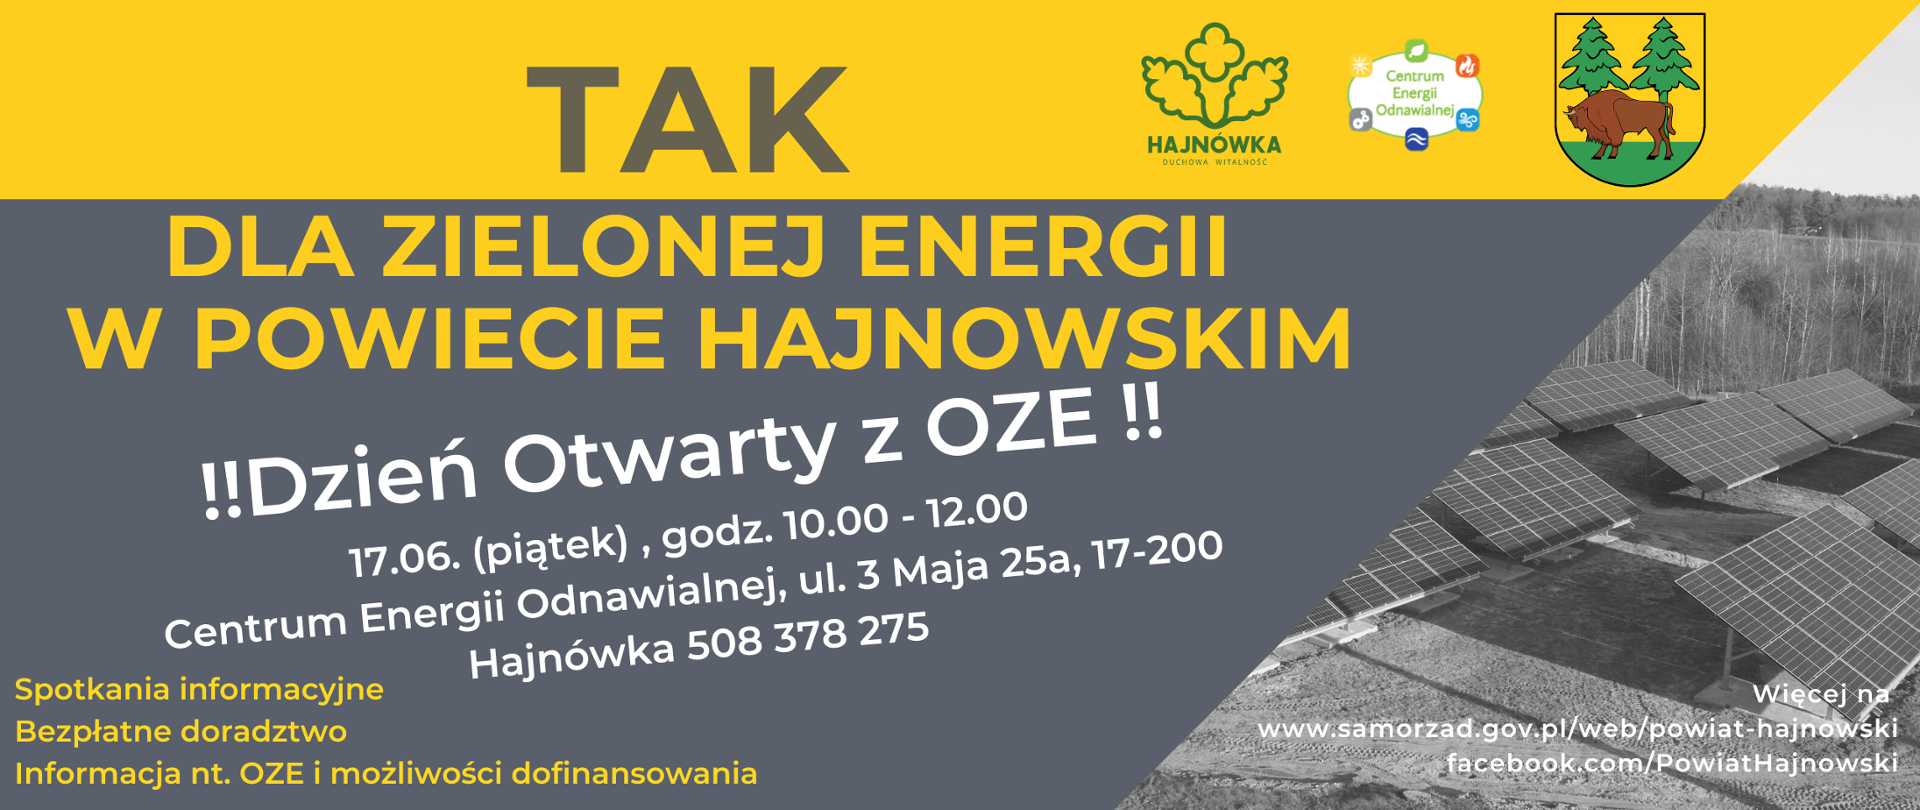 Tak dla zielonej energii w Powiecie Hajnowskim! !!Dzień Otwarty z OZE !!
17.06. (piątek) , godz. 10.00 - 12.00
Centrum Energii Odnawialnej, ul. 3 Maja 25a, 17-200 Hajnówka 508 378 275